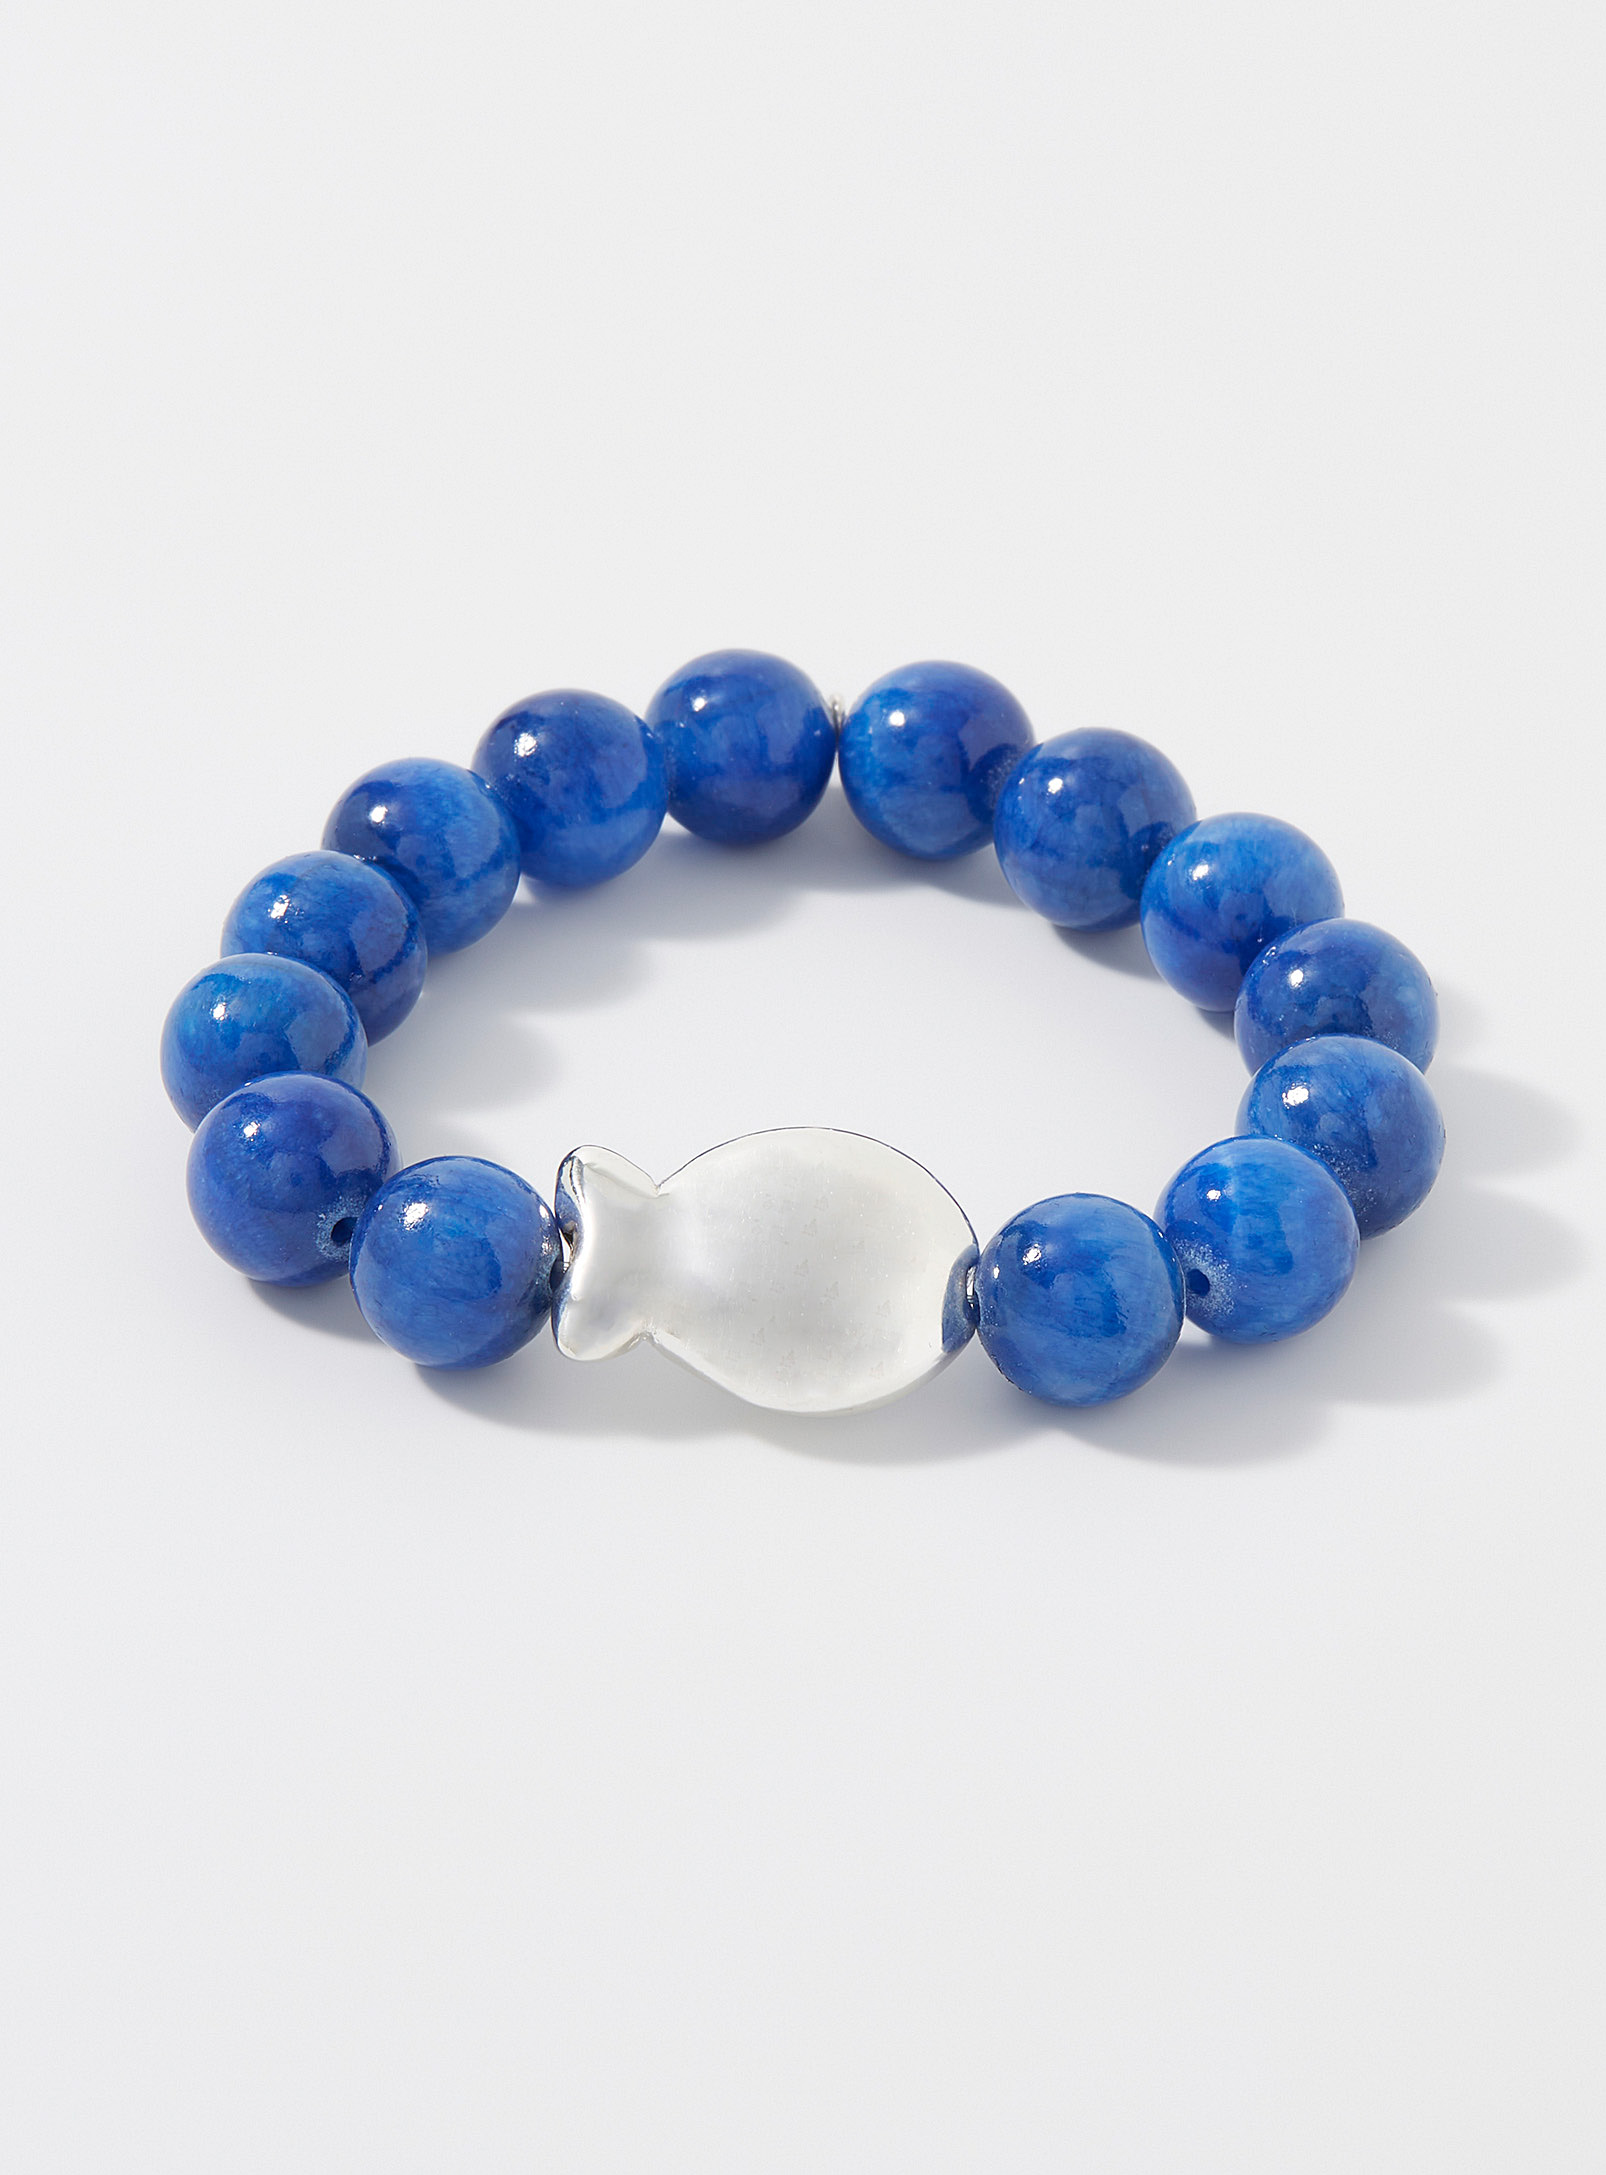 Clio blue - Le bracelet grandes perles iridescentes